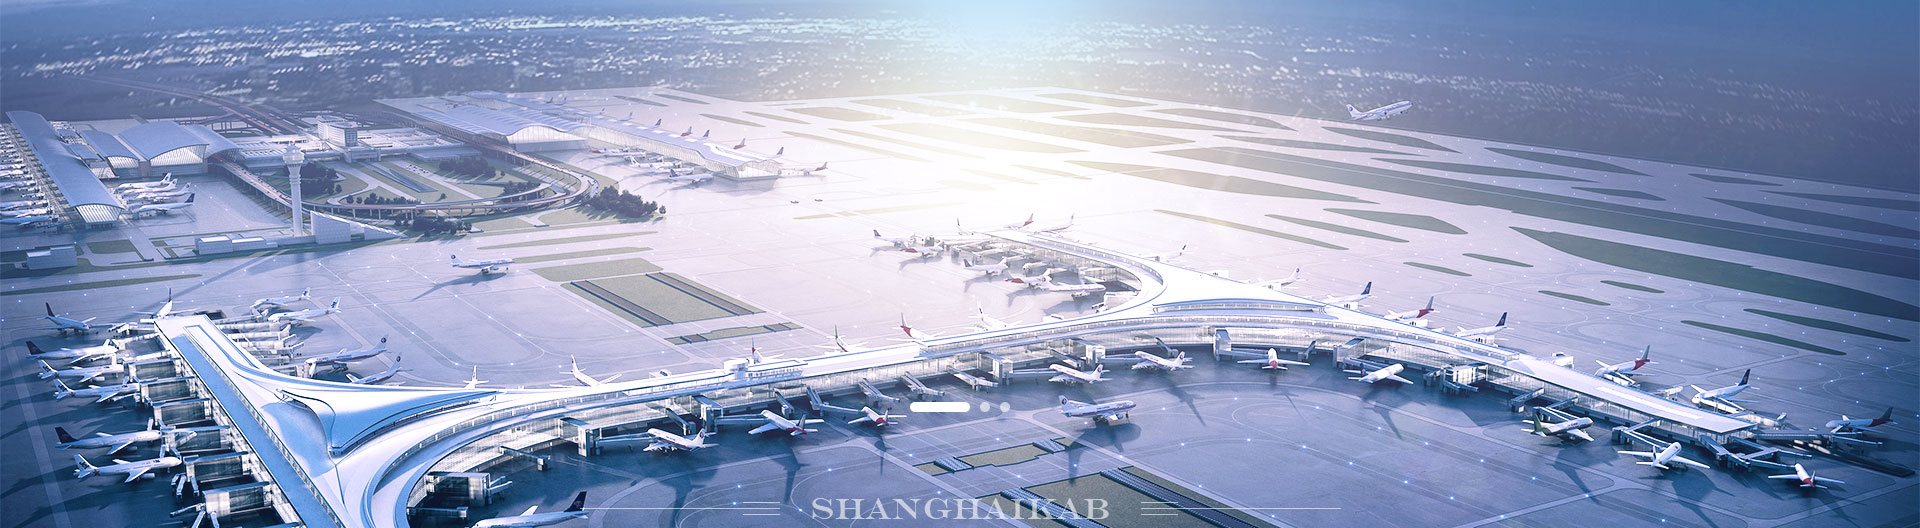 空运口岸—上海浦东国际机场卫星厅、T1、T2航站楼